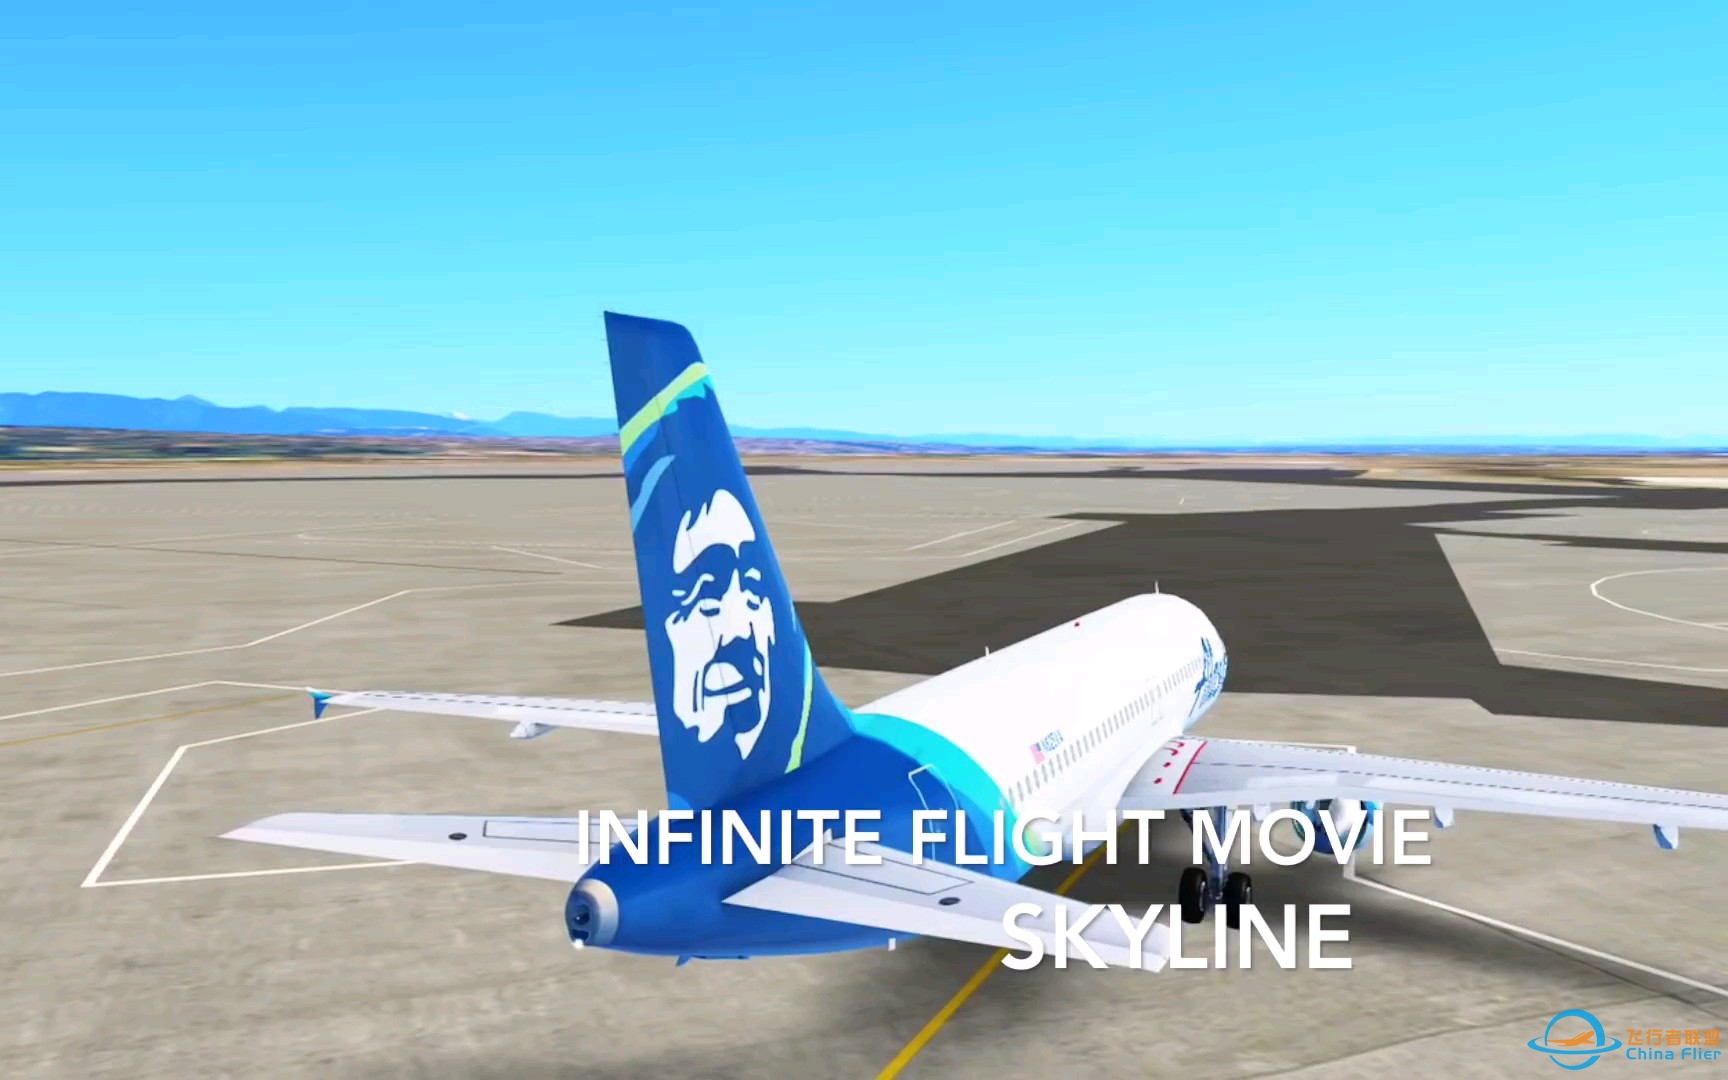 【搬运】infinite flight微电影#2 SKYLINE-2181 